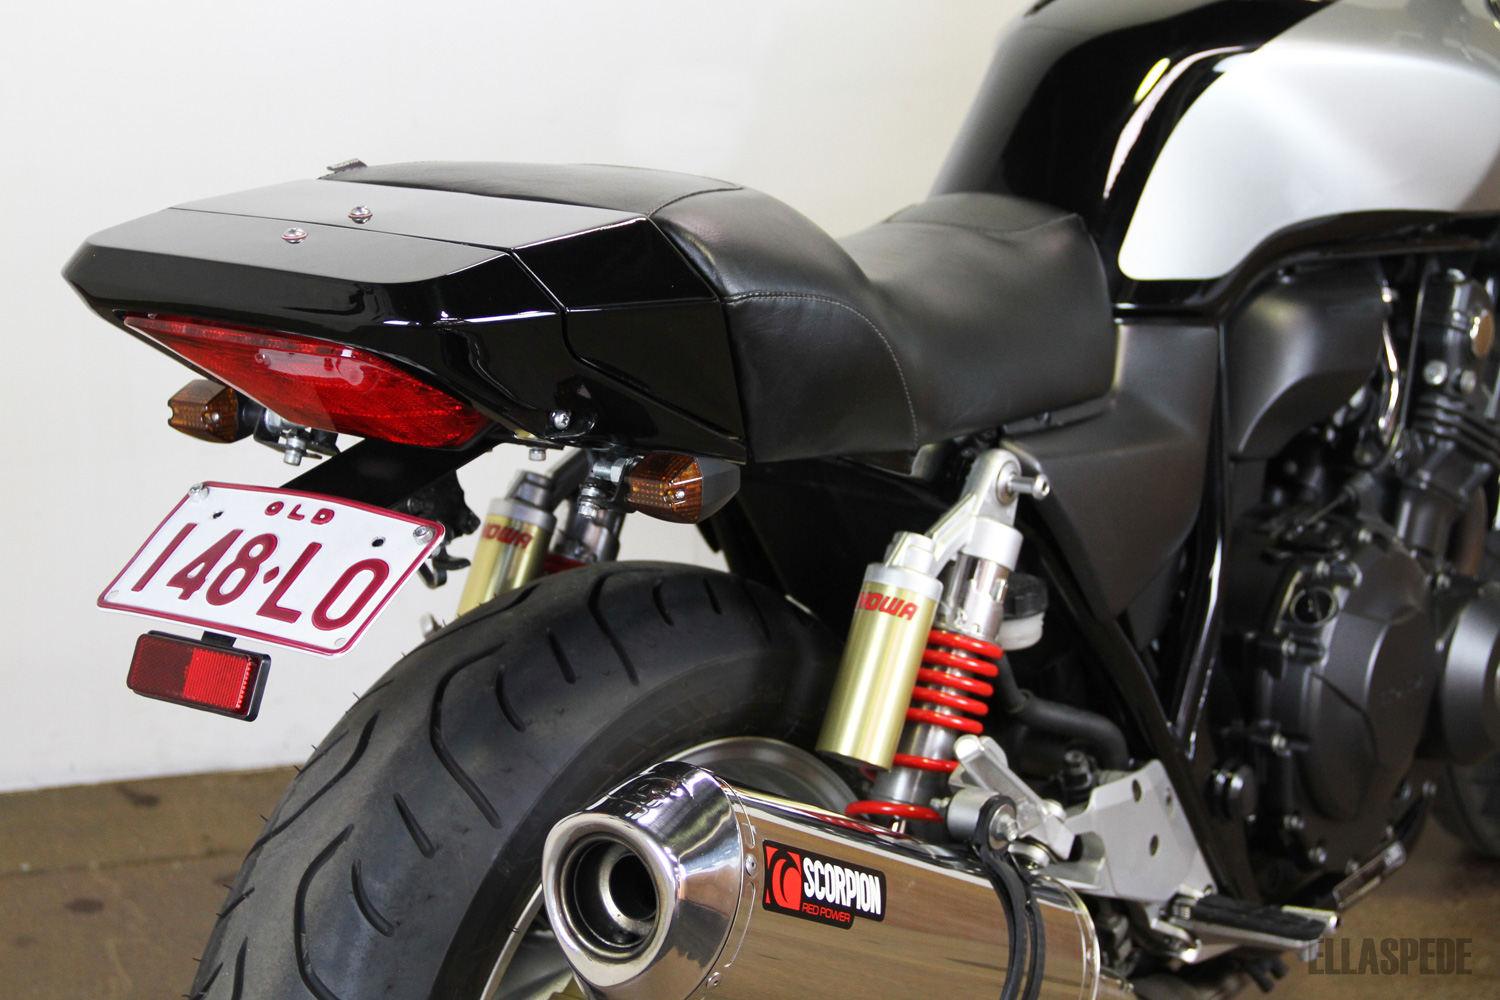 EB087 – 2011 Honda CB400 kuyruk arka taraf